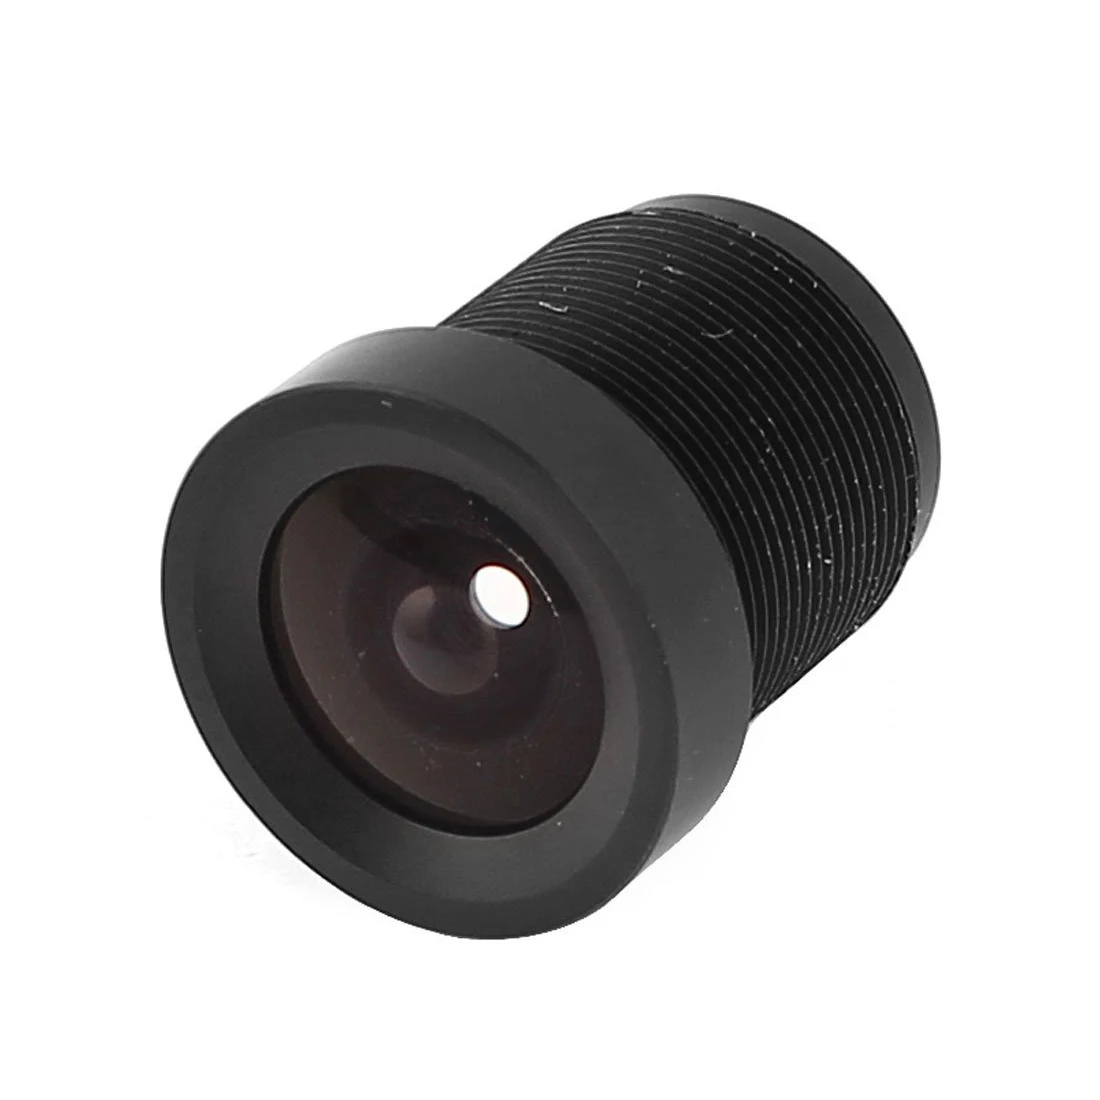 M12 Резьбовое крепление фокусное расстояние 3,6 мм F2.0 инфракрасный объектив для CCD камеры видеонаблюдения